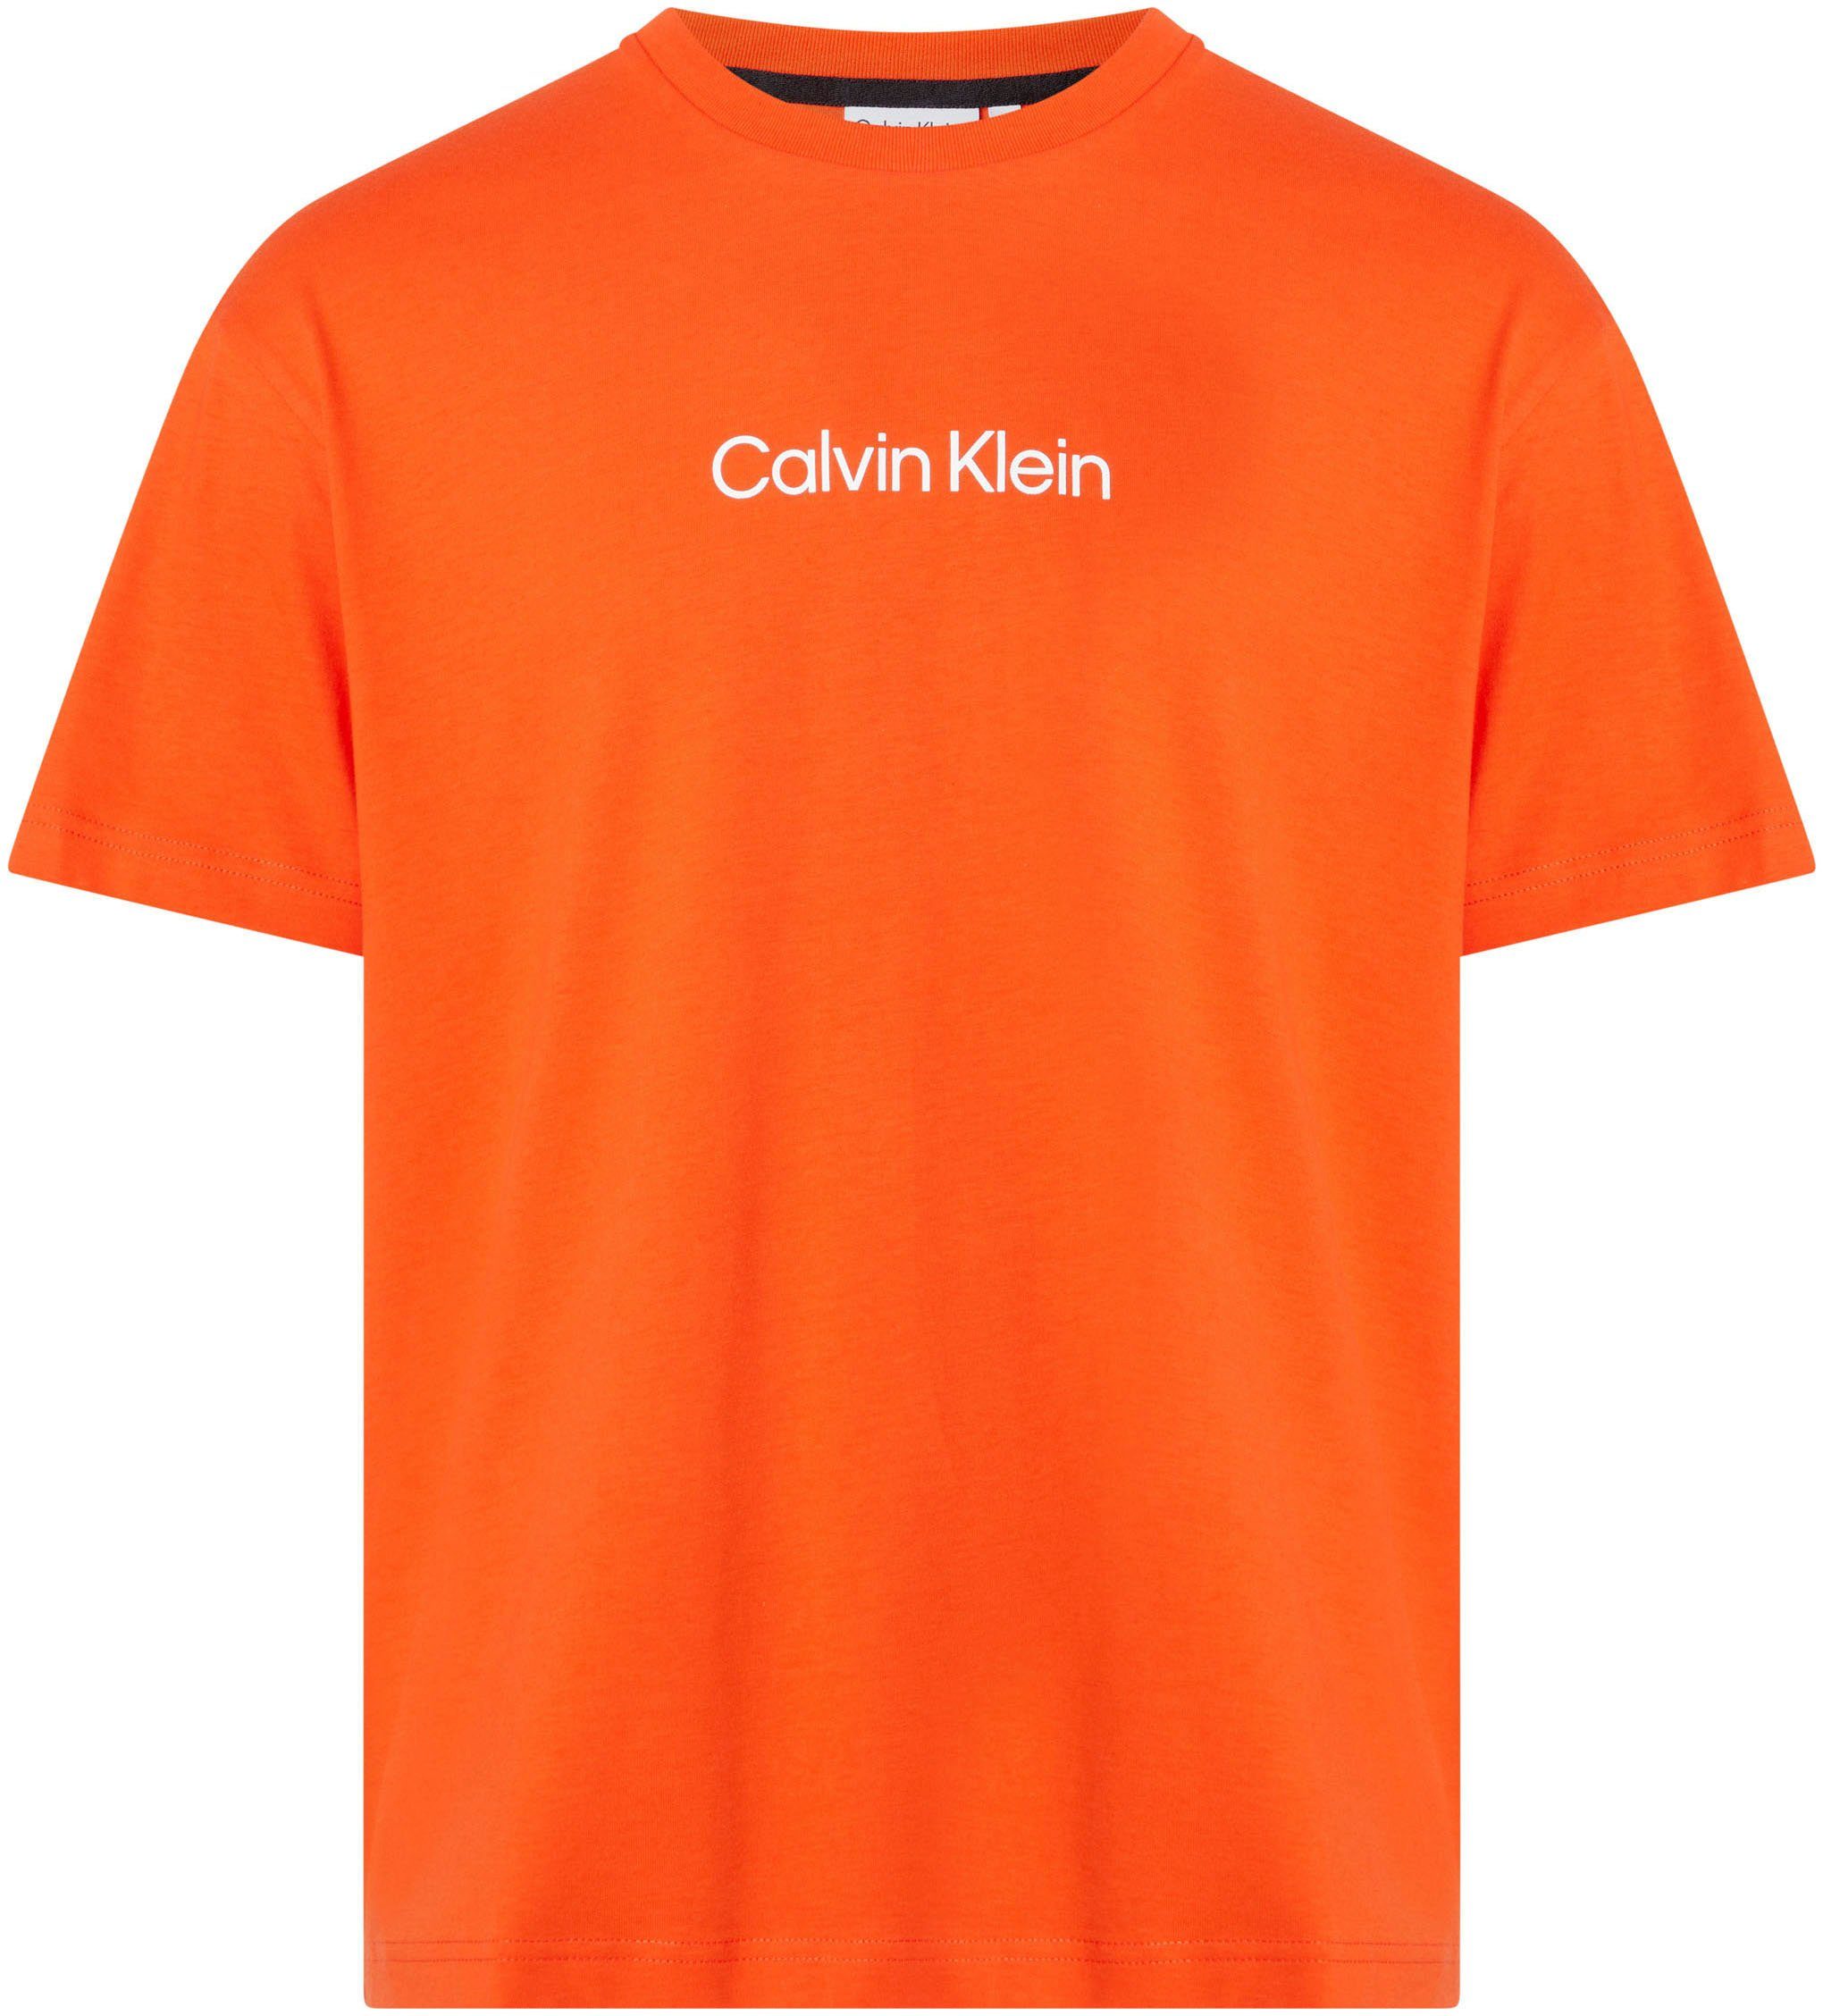 Spicy Markenlabel Orange LOGO T-SHIRT Klein COMFORT Calvin T-Shirt HERO aufgedrucktem mit